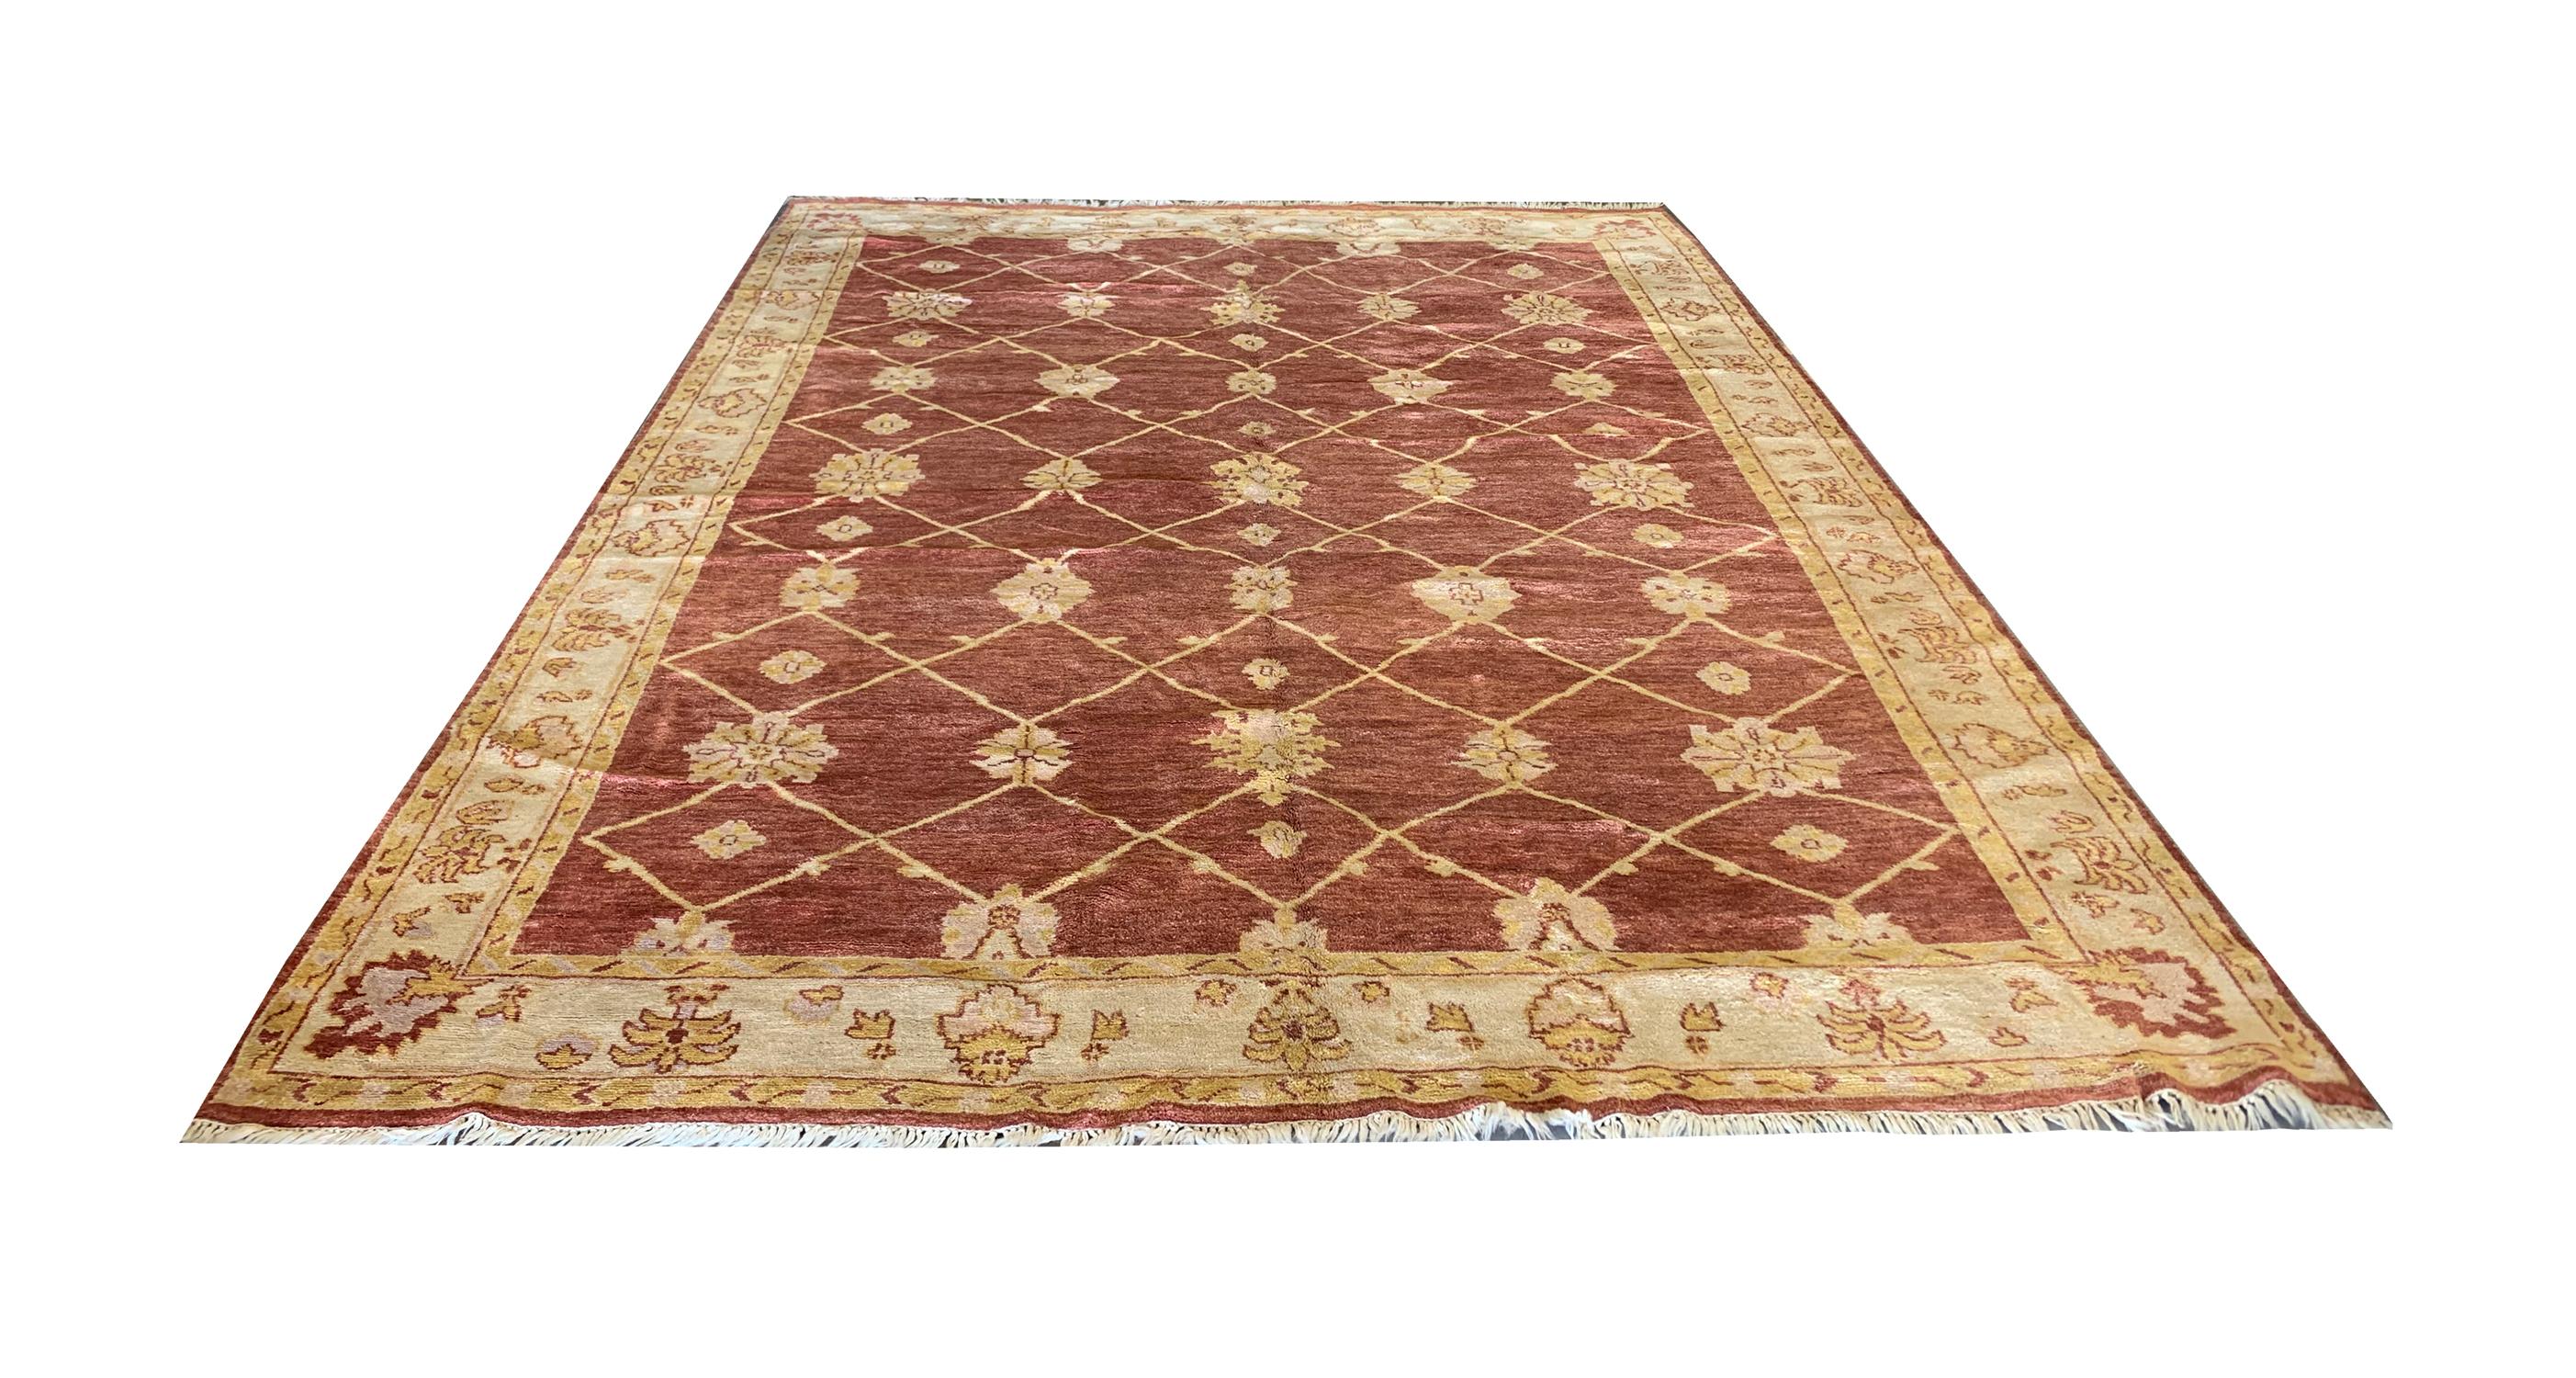 Un motif géométrique floral répétitif révélé dans cette pièce est un tapis Ziegler simple mais magnifique. Tissé à la main en Inde dans les années 1990, avec une palette de couleurs subtiles comprenant un fond brun-rouge et des accents beige-or qui